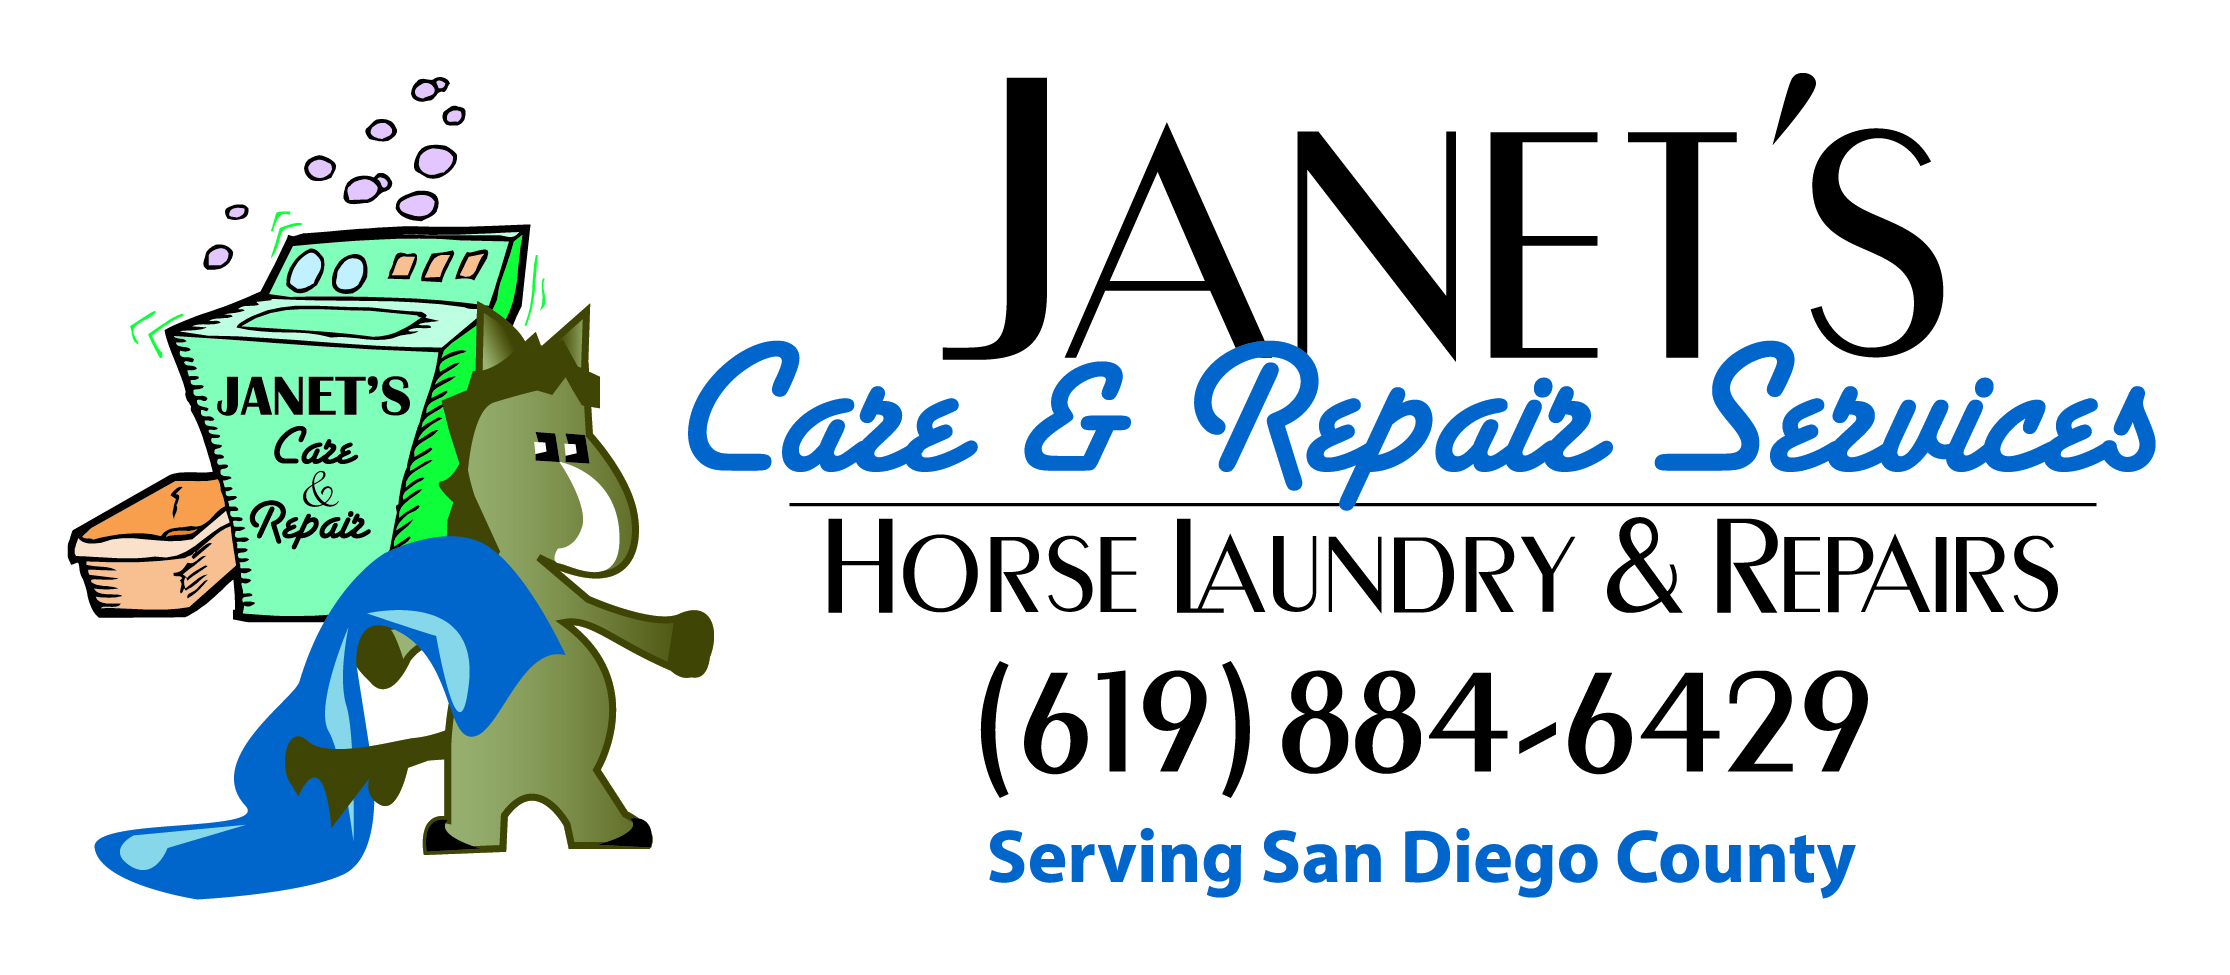 Jane's Care and Repair